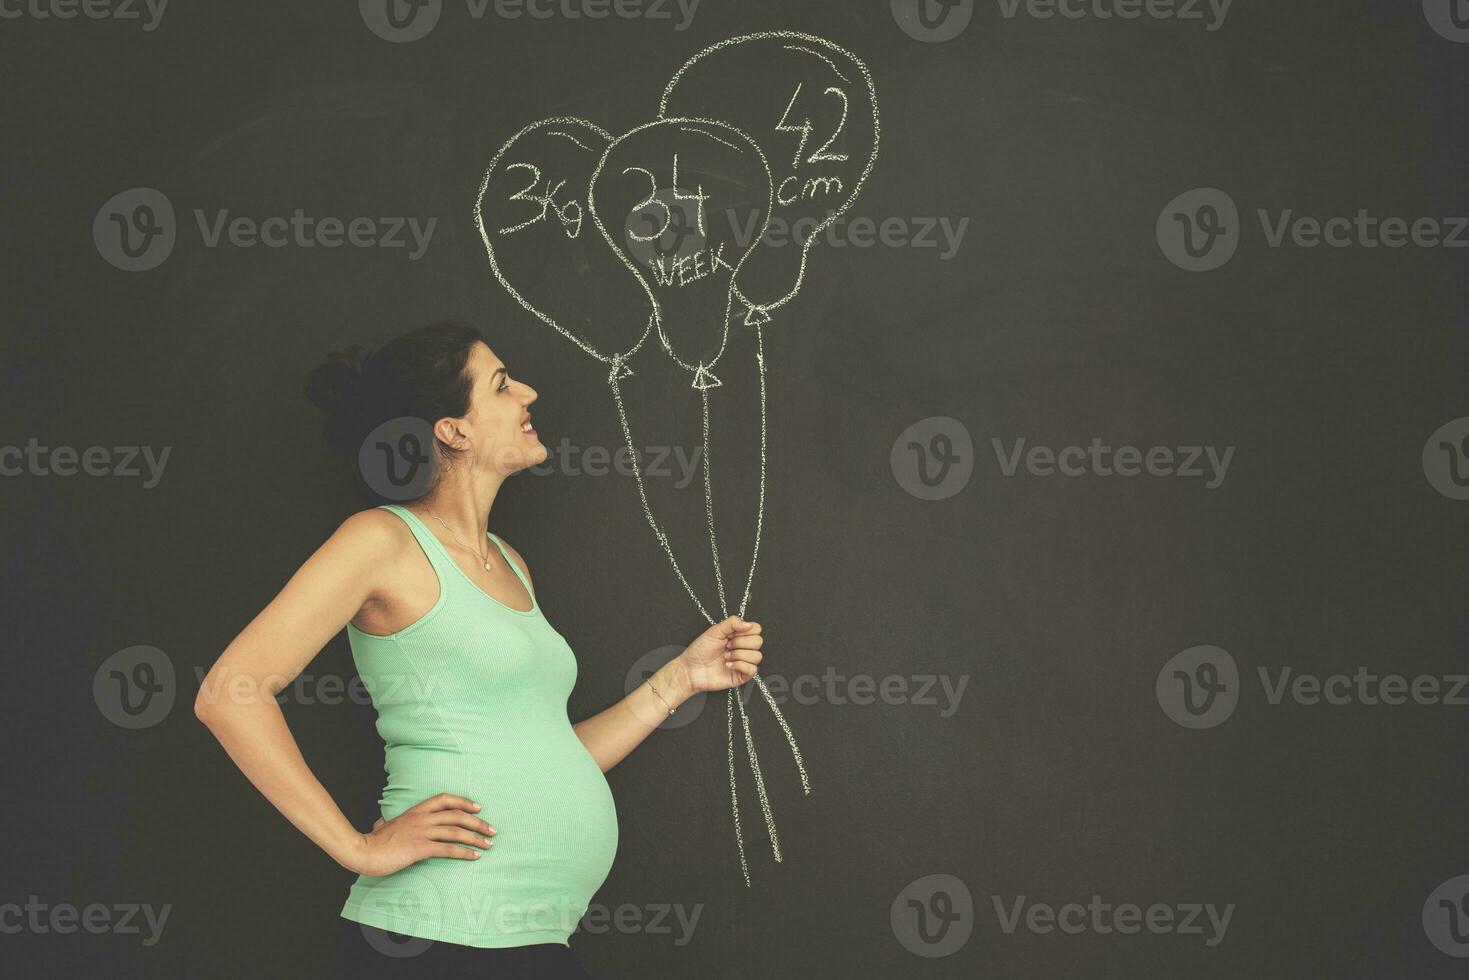 portret van zwanger vrouw in voorkant van zwart schoolbord foto